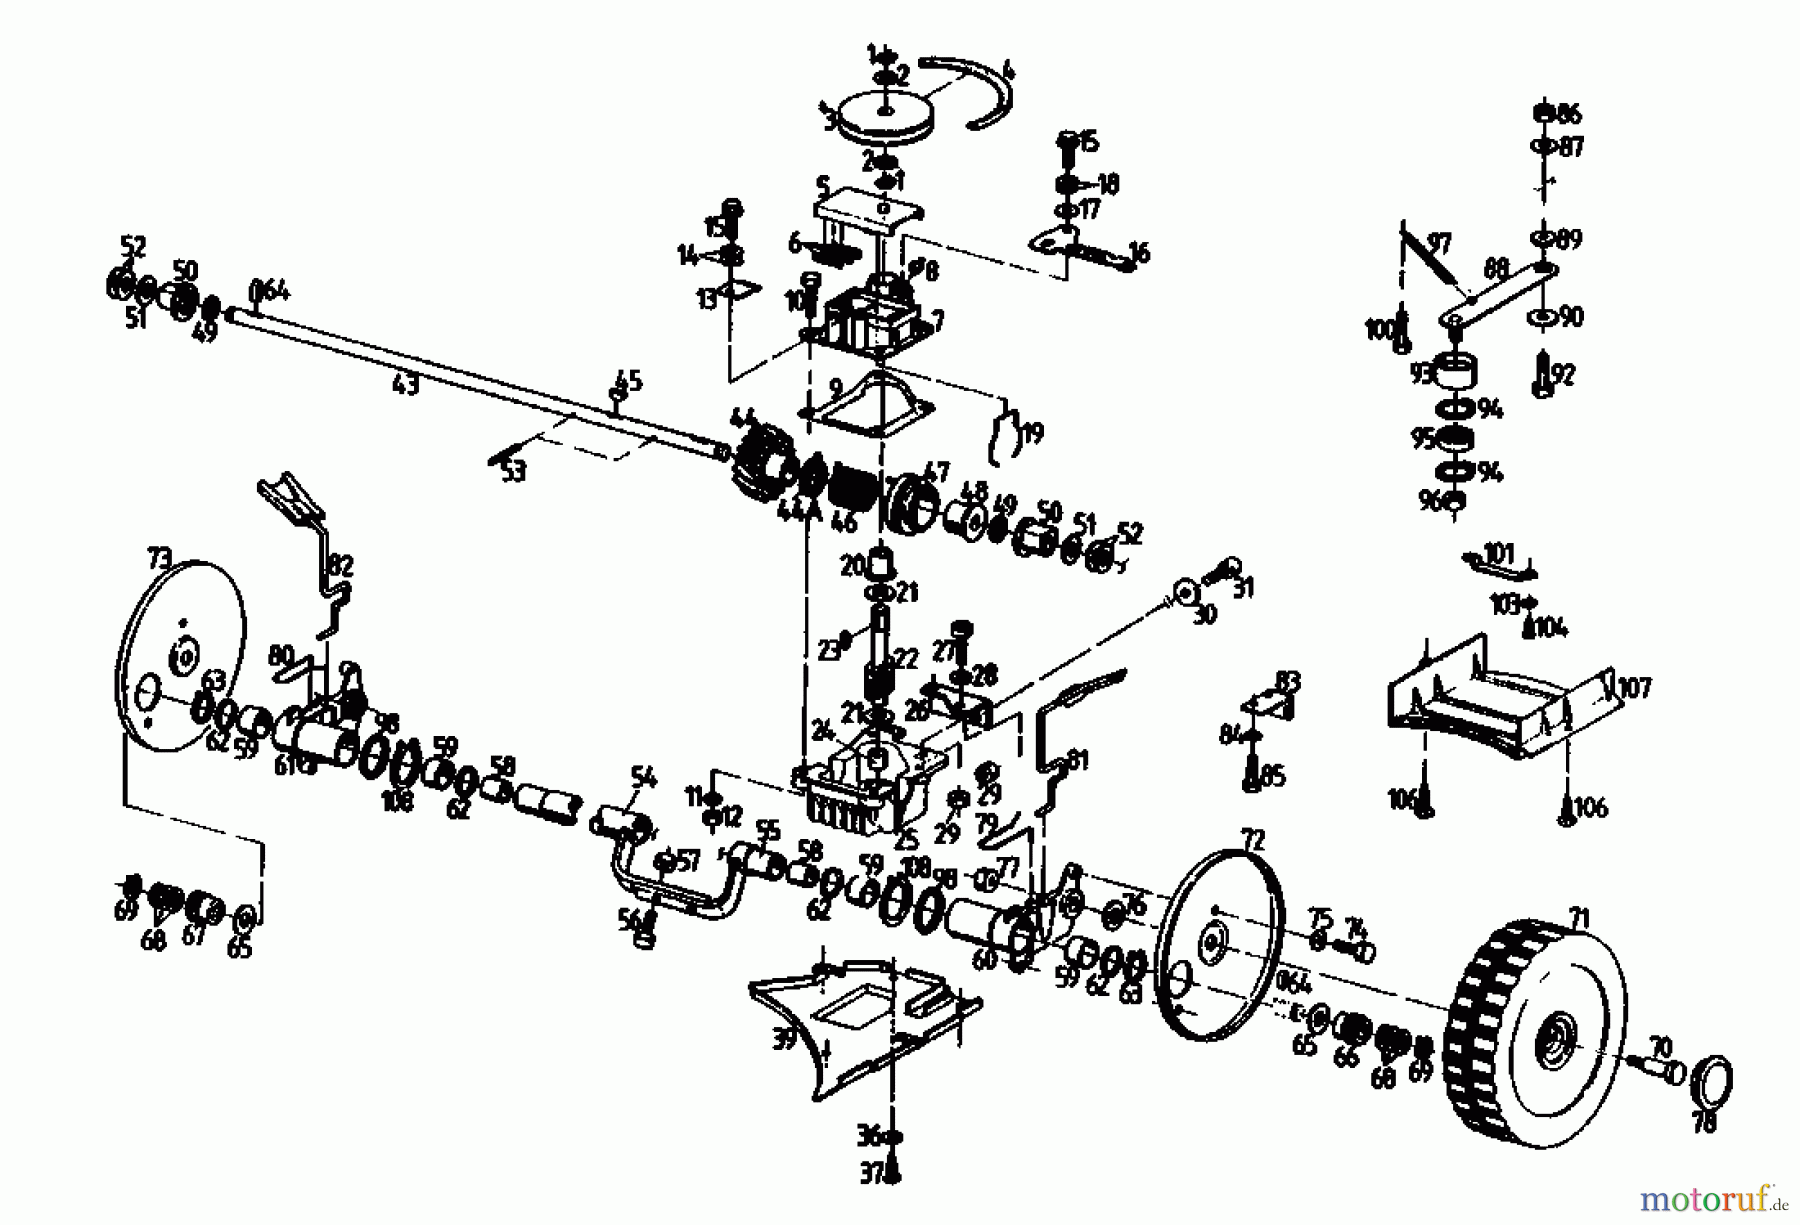  Gutbrod Motormäher mit Antrieb HB 47 R 02847.08  (1990) Getriebe